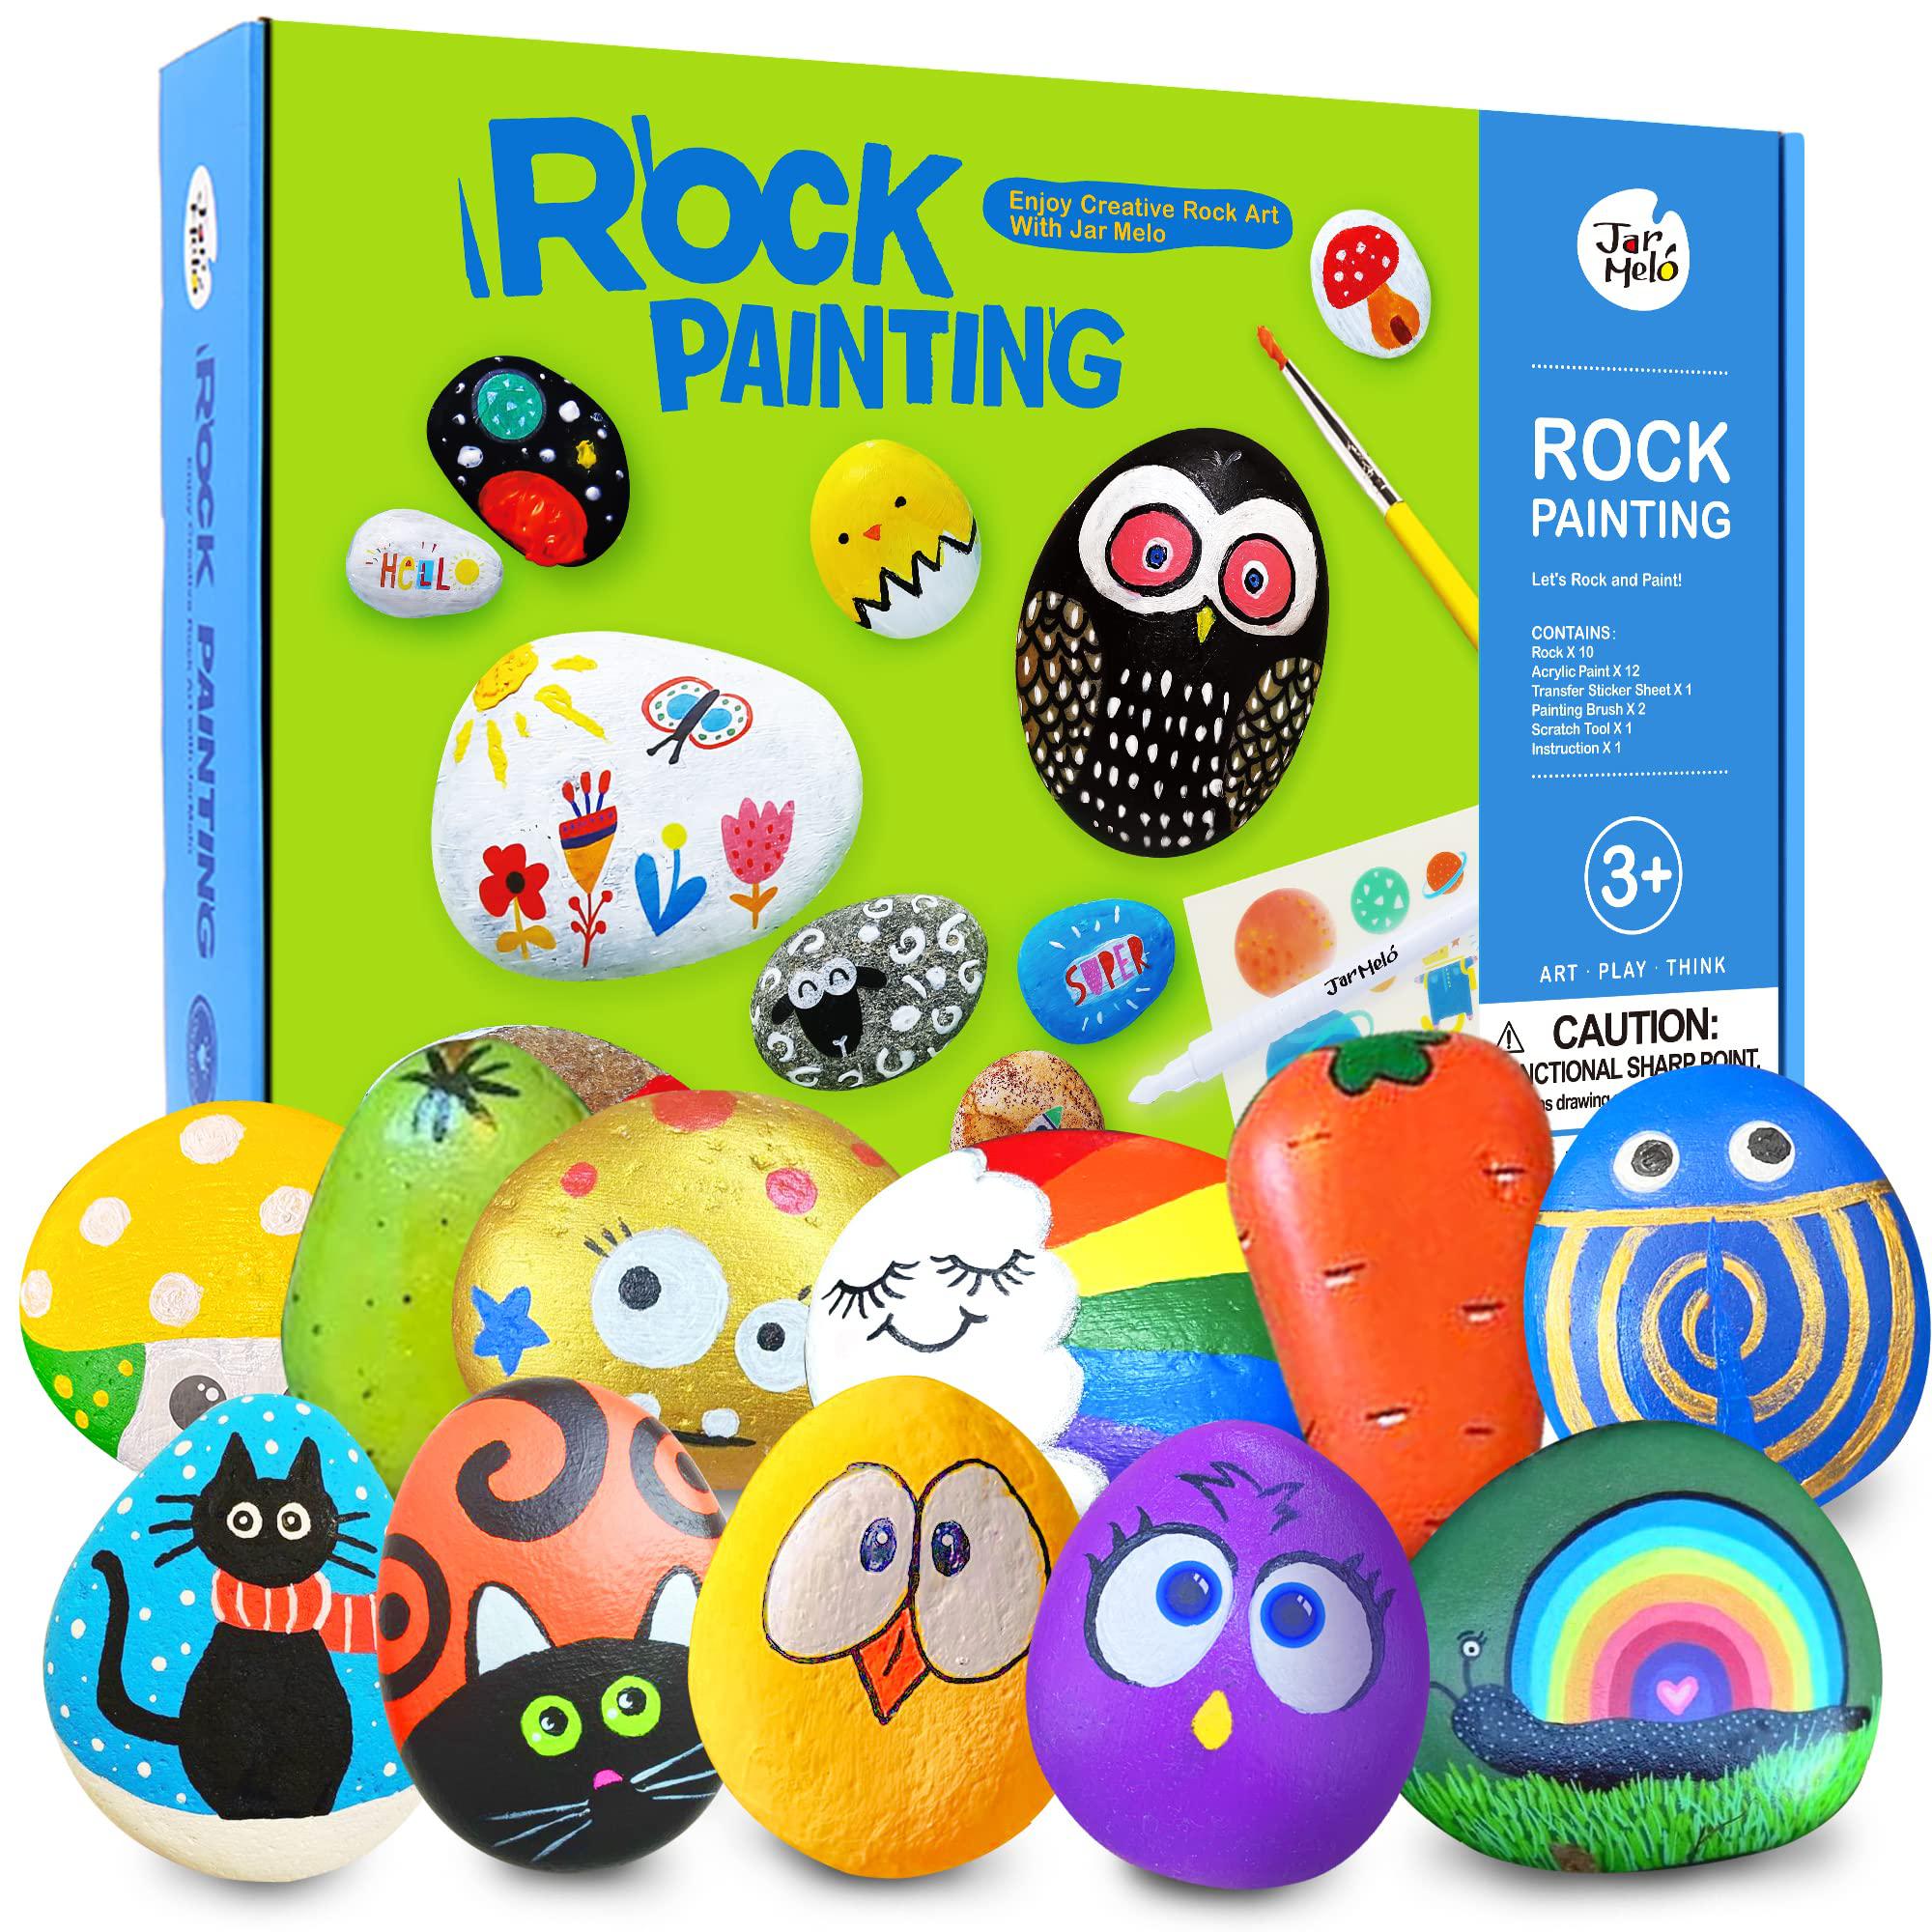 Jar Melo jar melo rock painting kits for kids, hide & seek rock